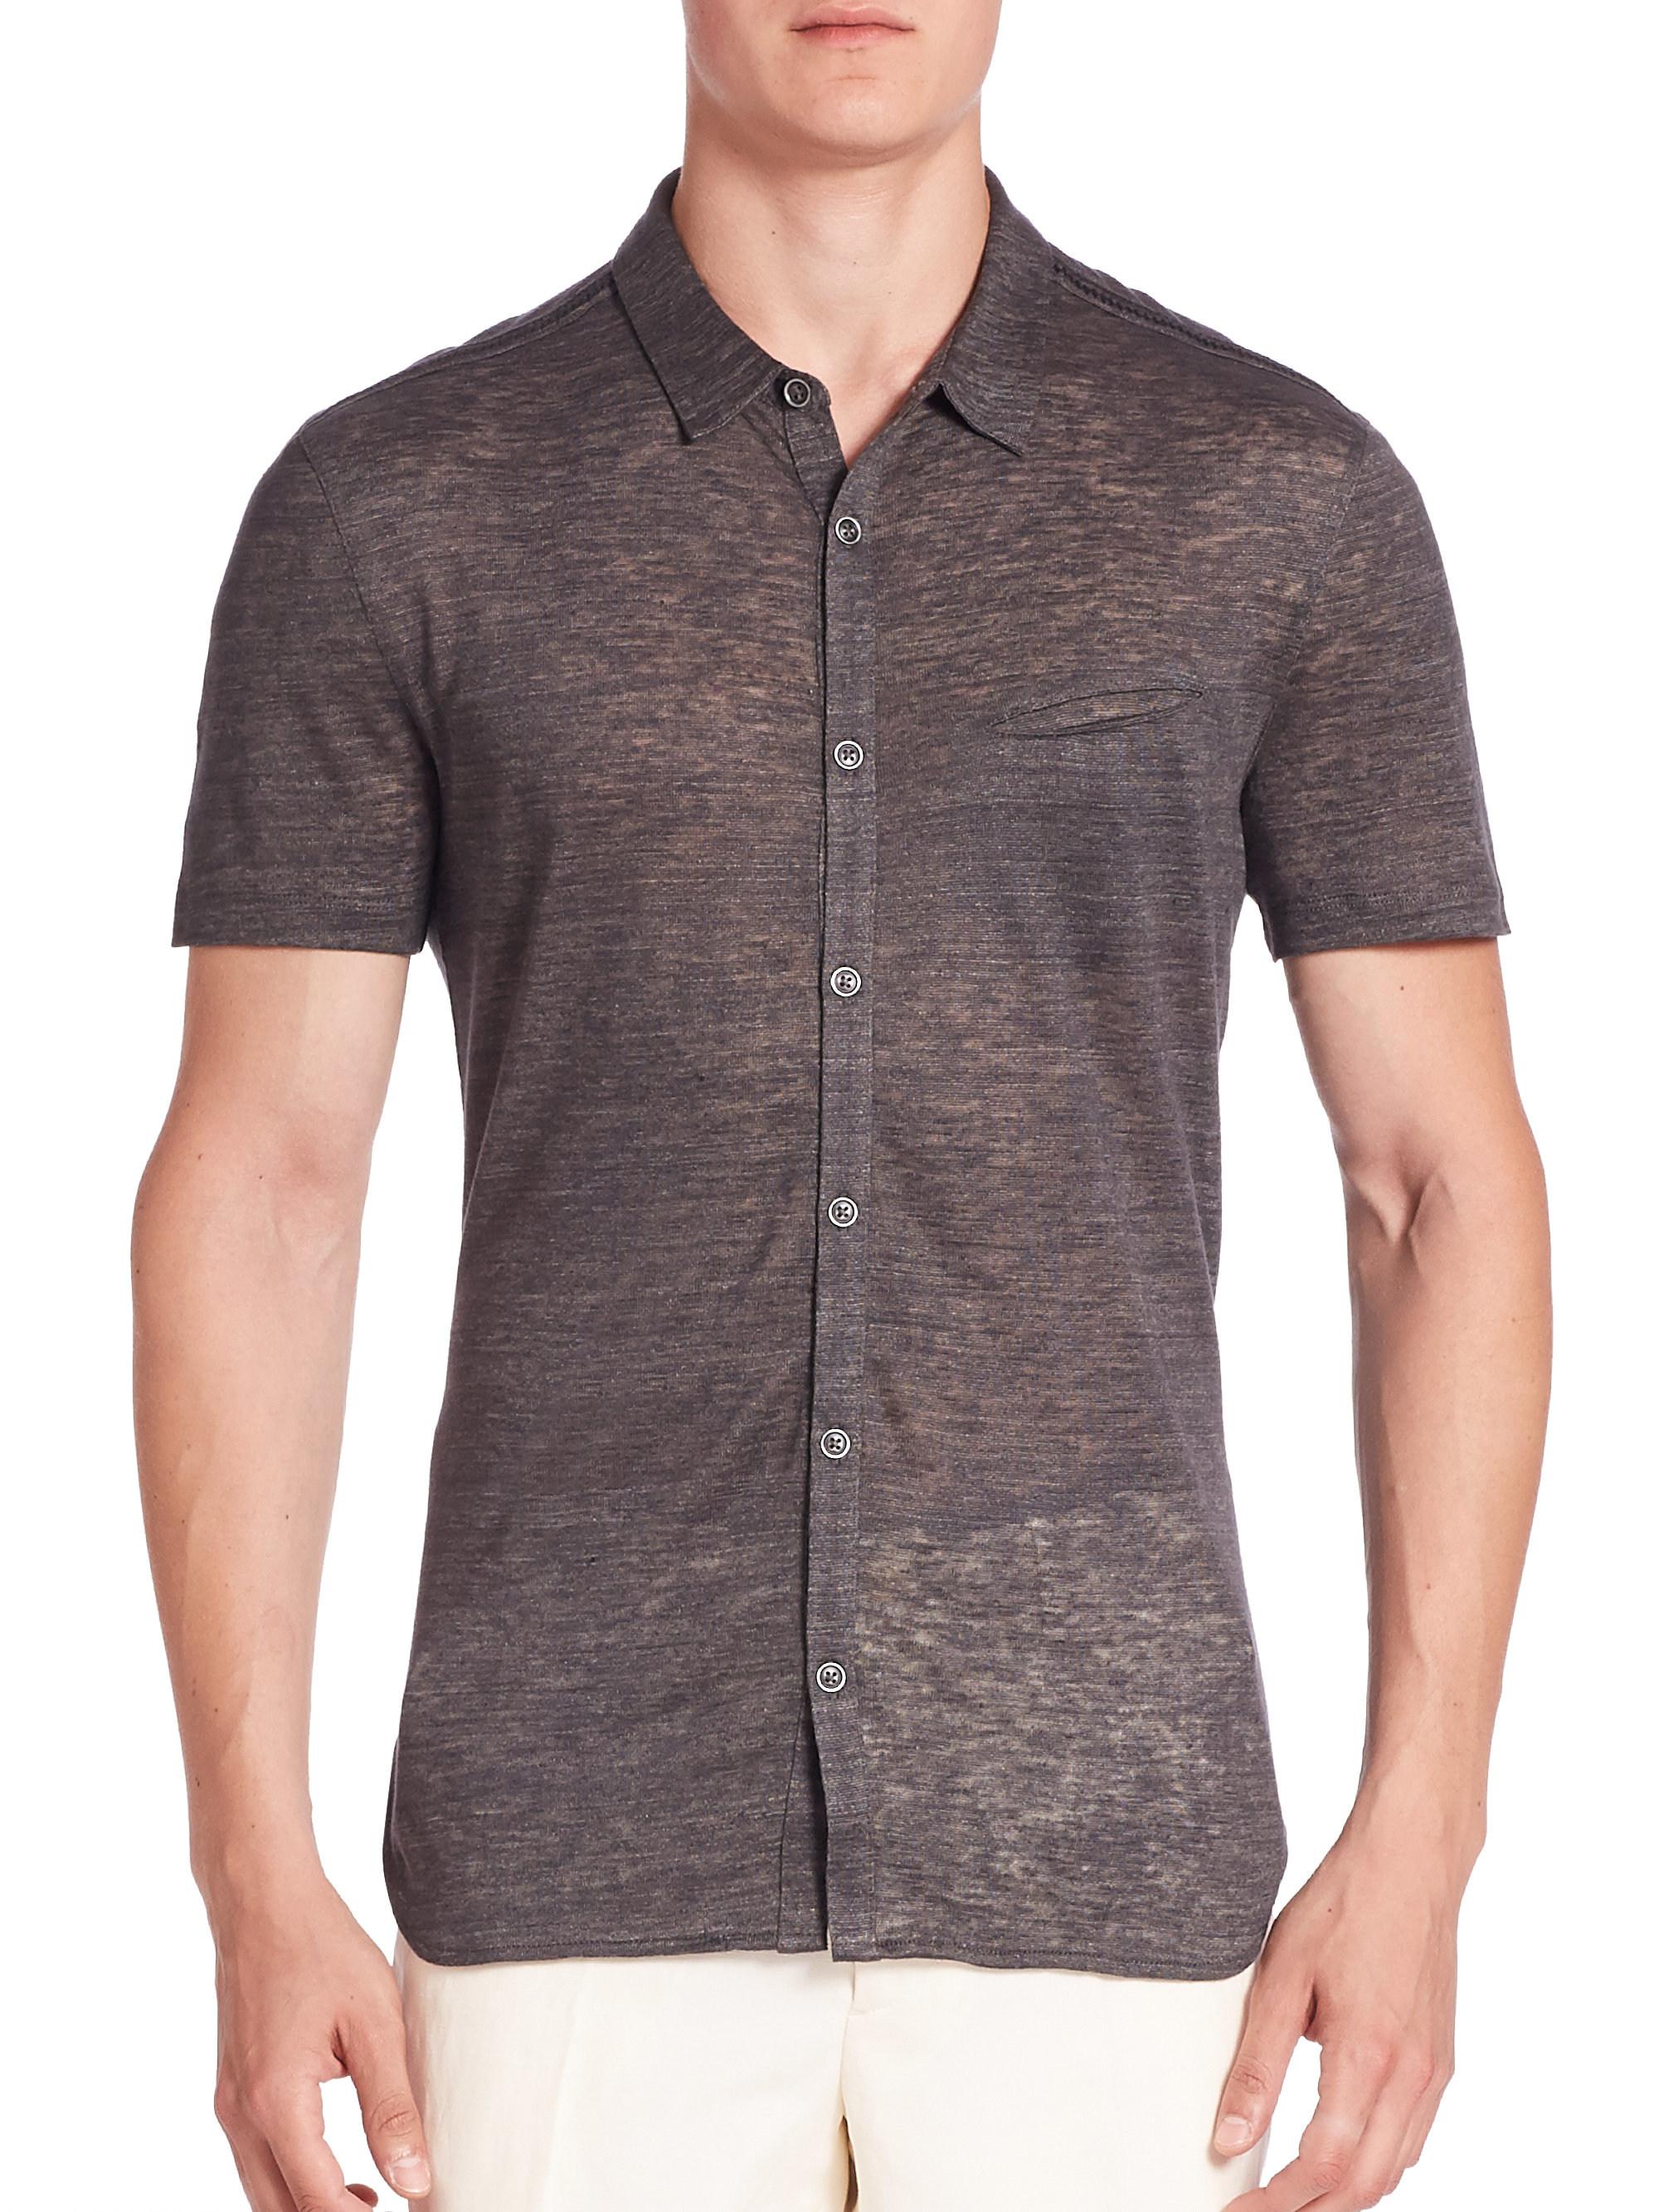 John Varvatos knit casual button-down shirt for men